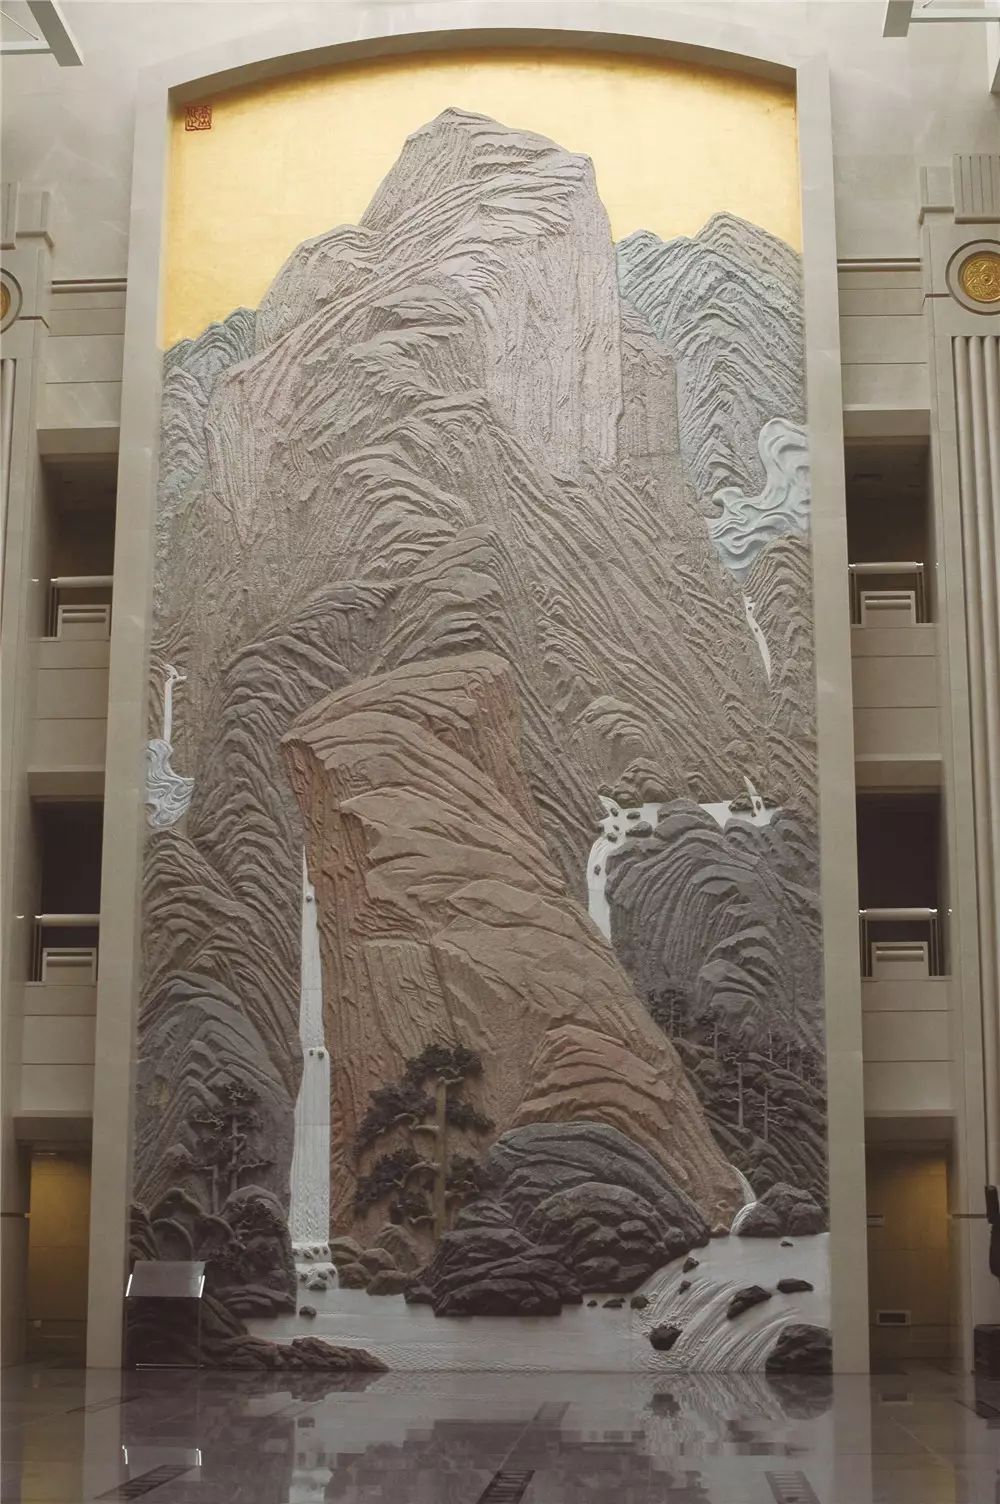 袁运甫 最高法院石雕壁画《高山仰止》